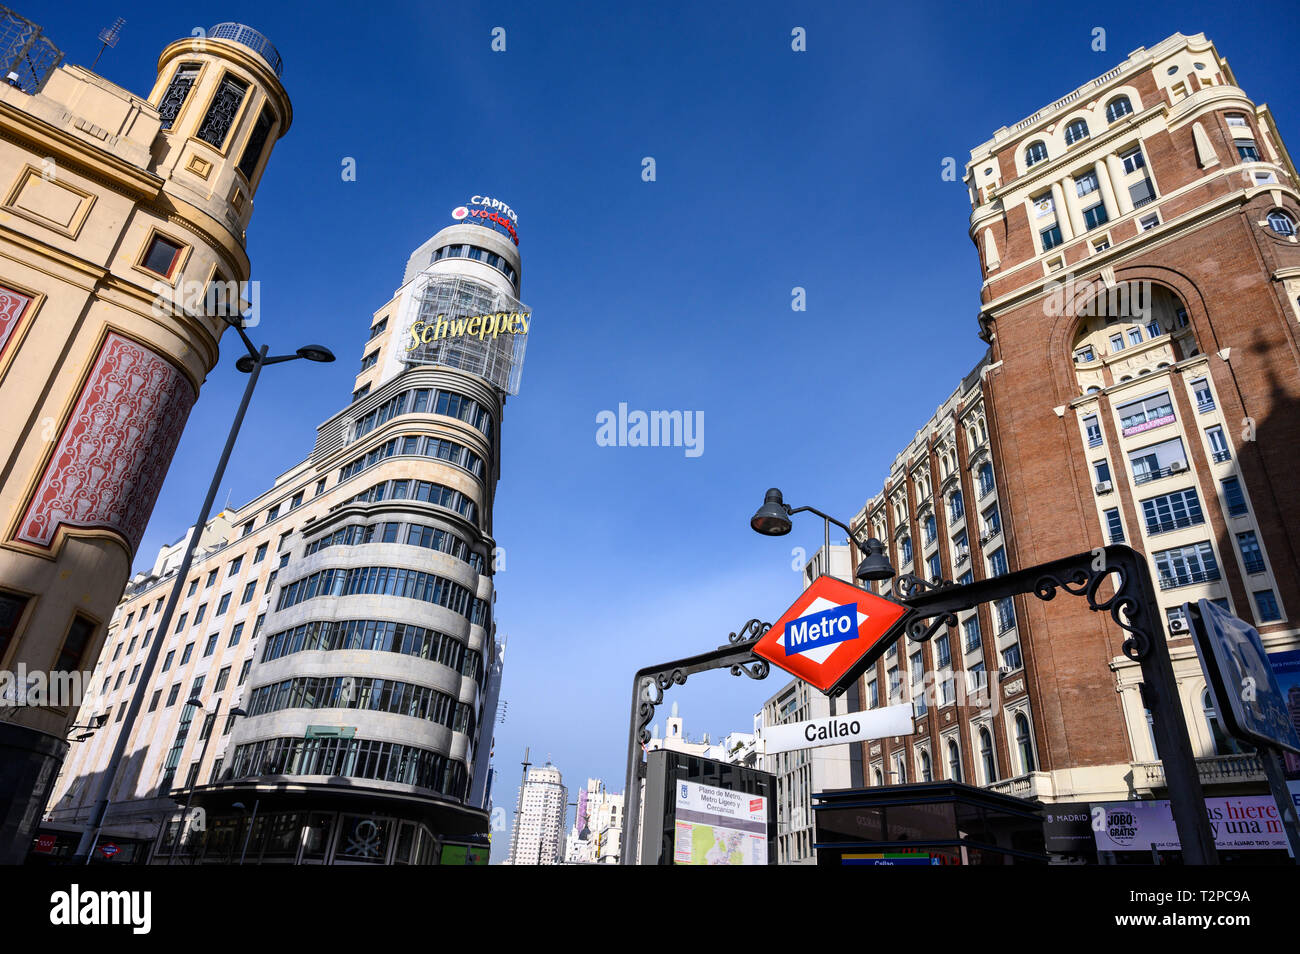 Callao Metro Station in der Plaza de Callao mit dem Aas Gebäude im Hintergrund, auf der Gran Via, im Herzen von Madrids Einkaufsviertel. Stockfoto